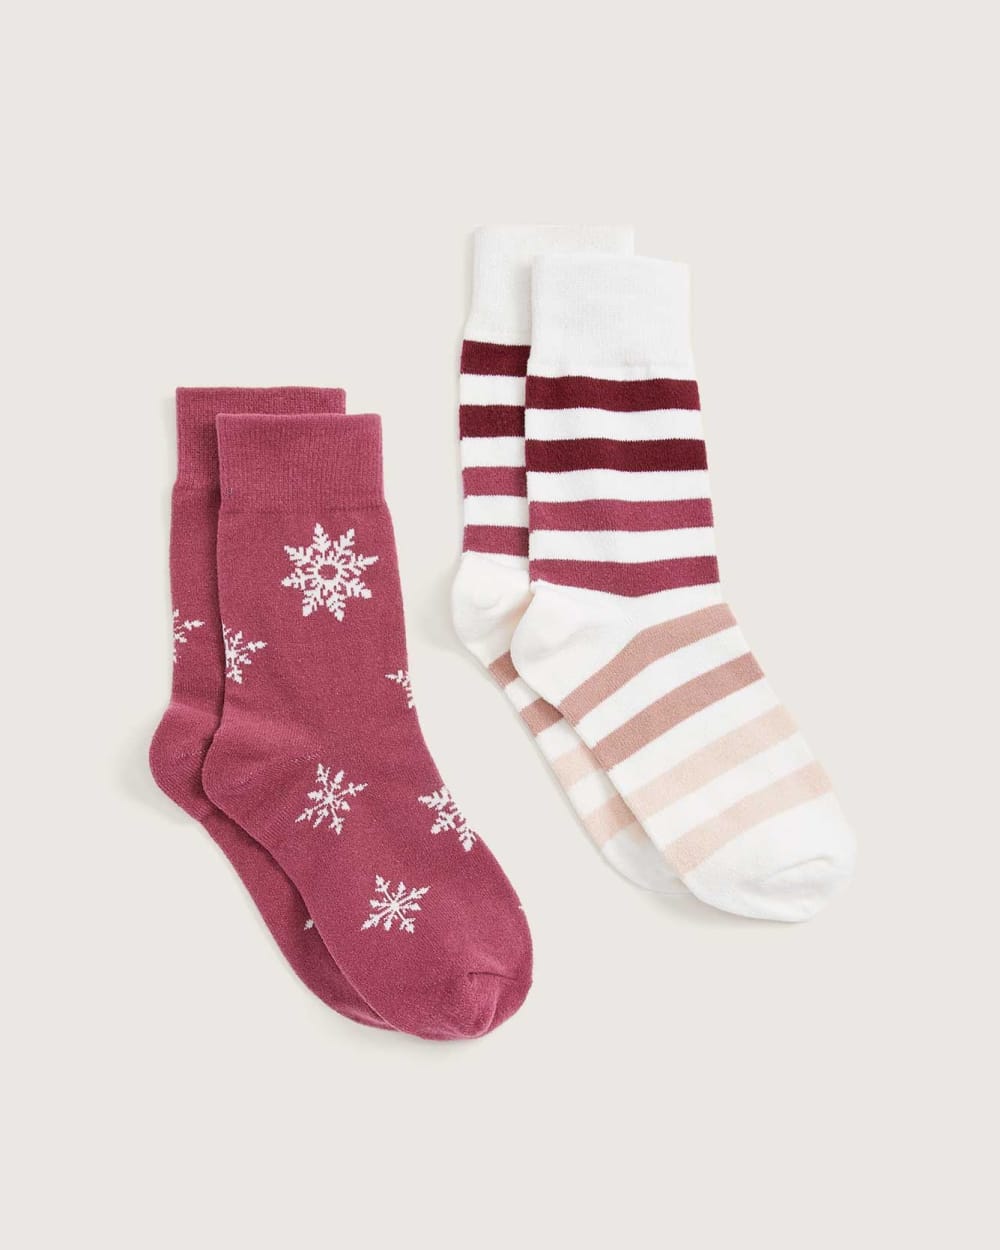 Printed Cozy Socks, 2 Pairs - tiVOGLIO | Penningtons